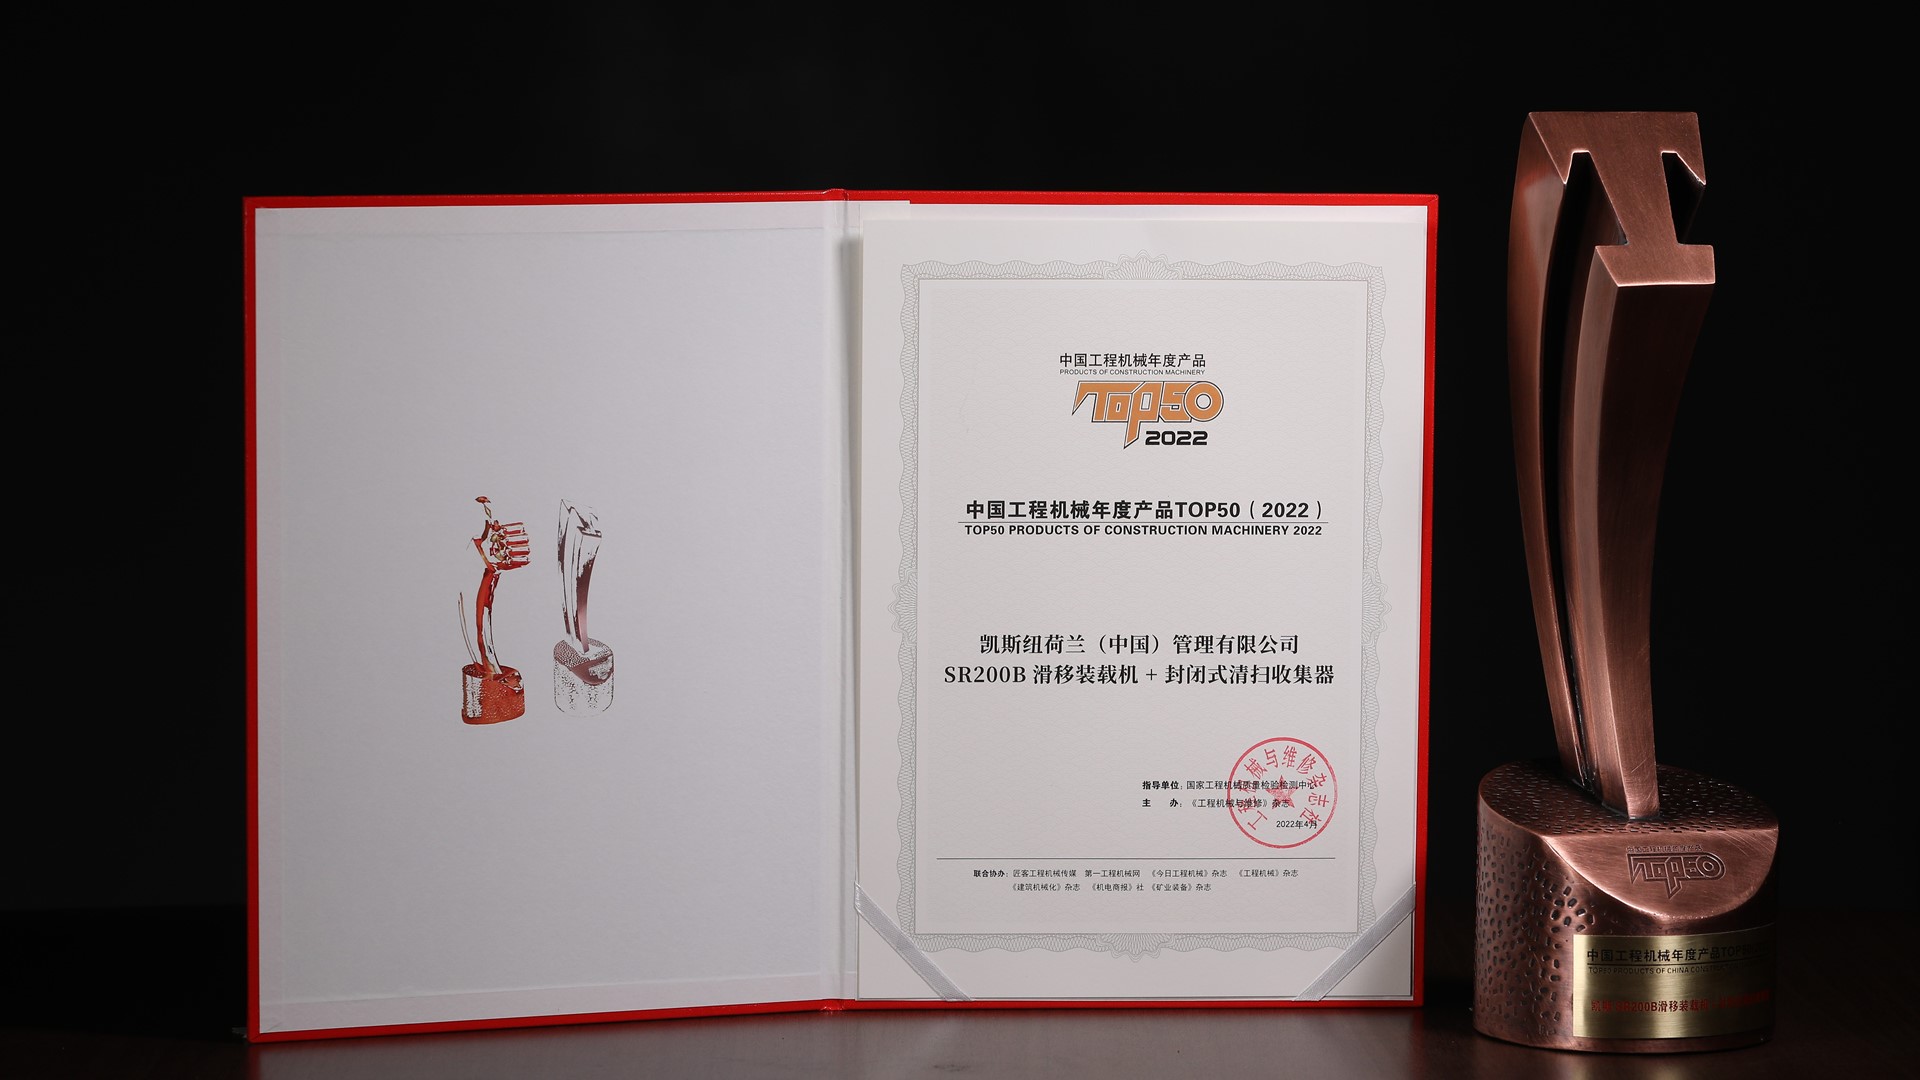 凯斯SR200B+封闭清扫器荣膺“2022中国工程机械年度产品TOP50”奖